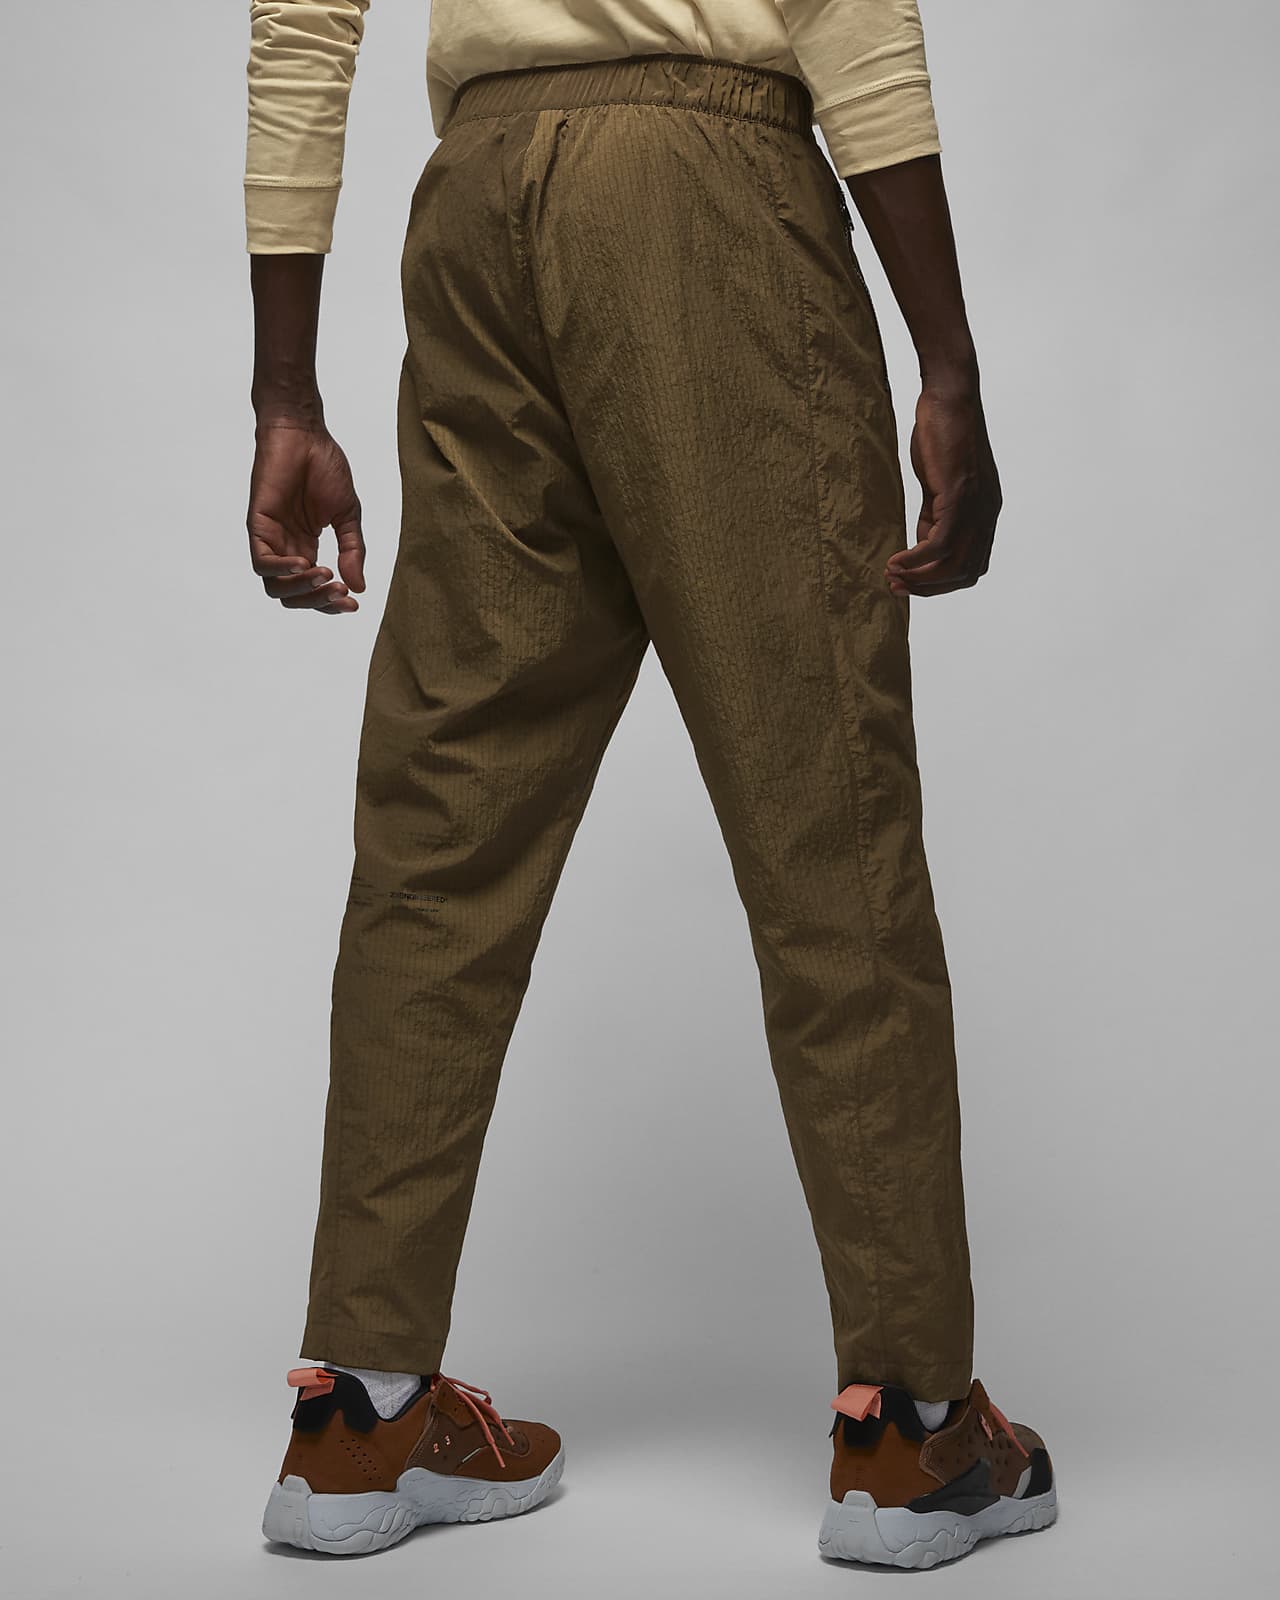 Jordan 23 Engineered Men's Woven Pants.